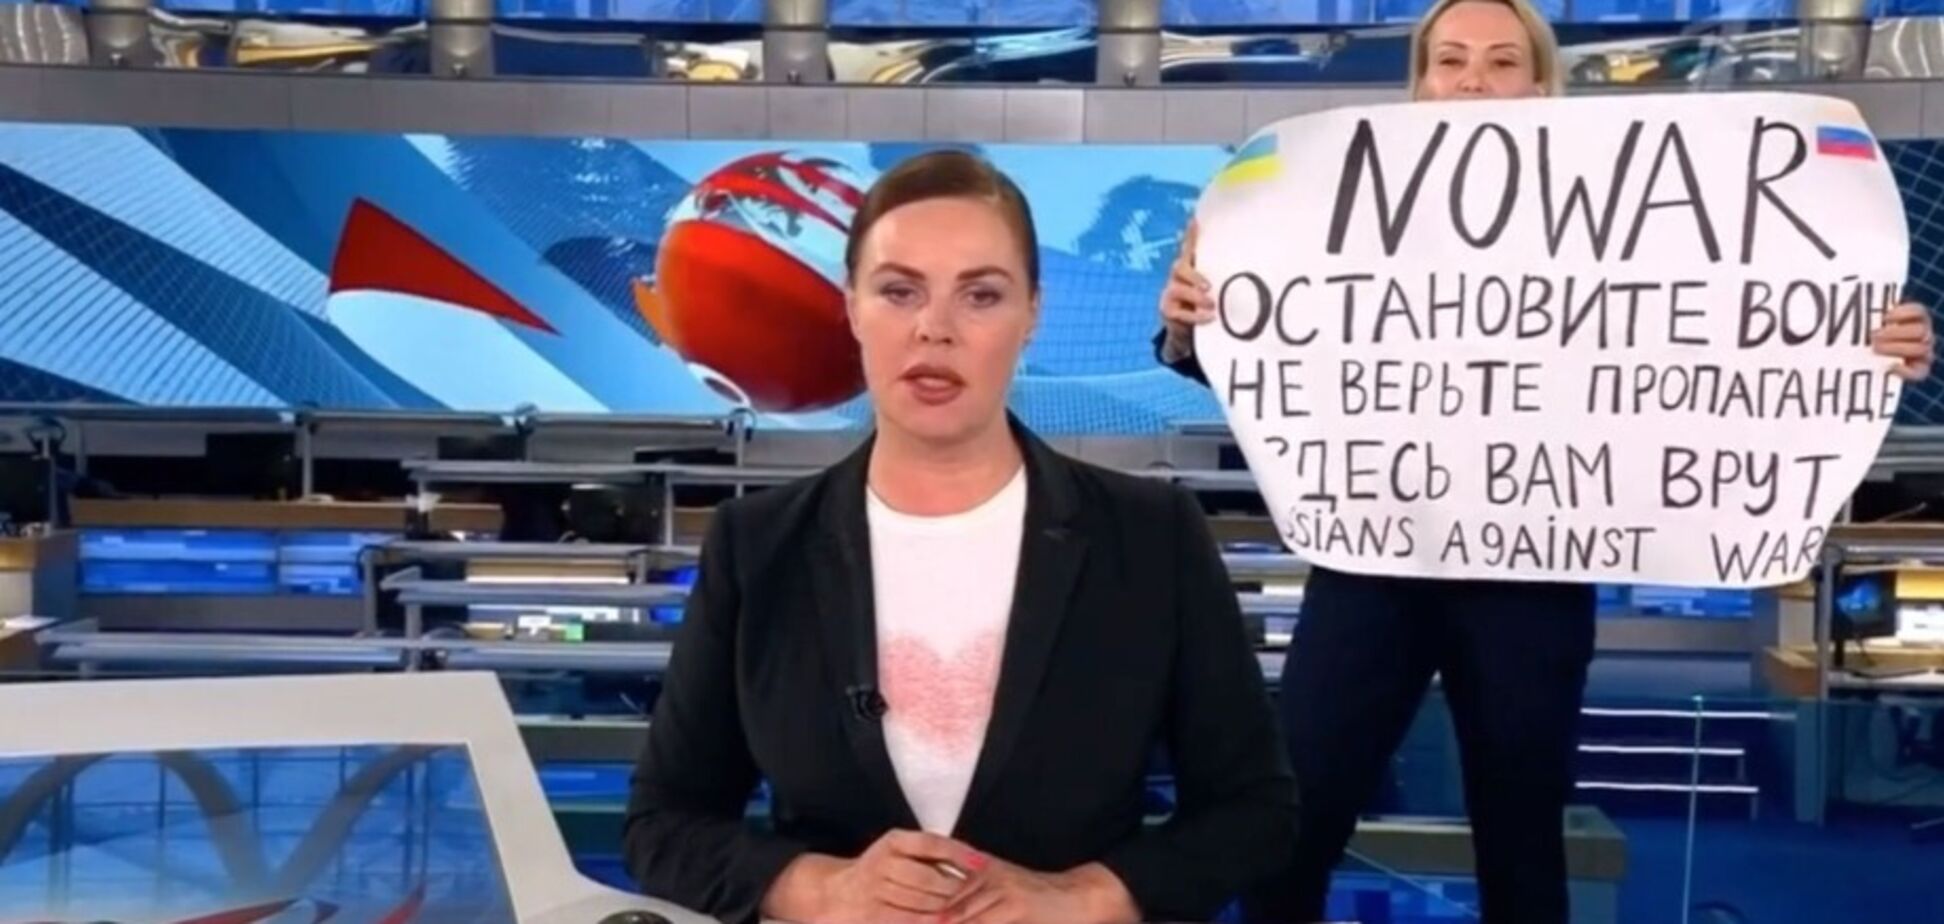 Сценарна робота 'першого каналу': ви впевнені, що новини в РФ йдуть в прямому ефірі?